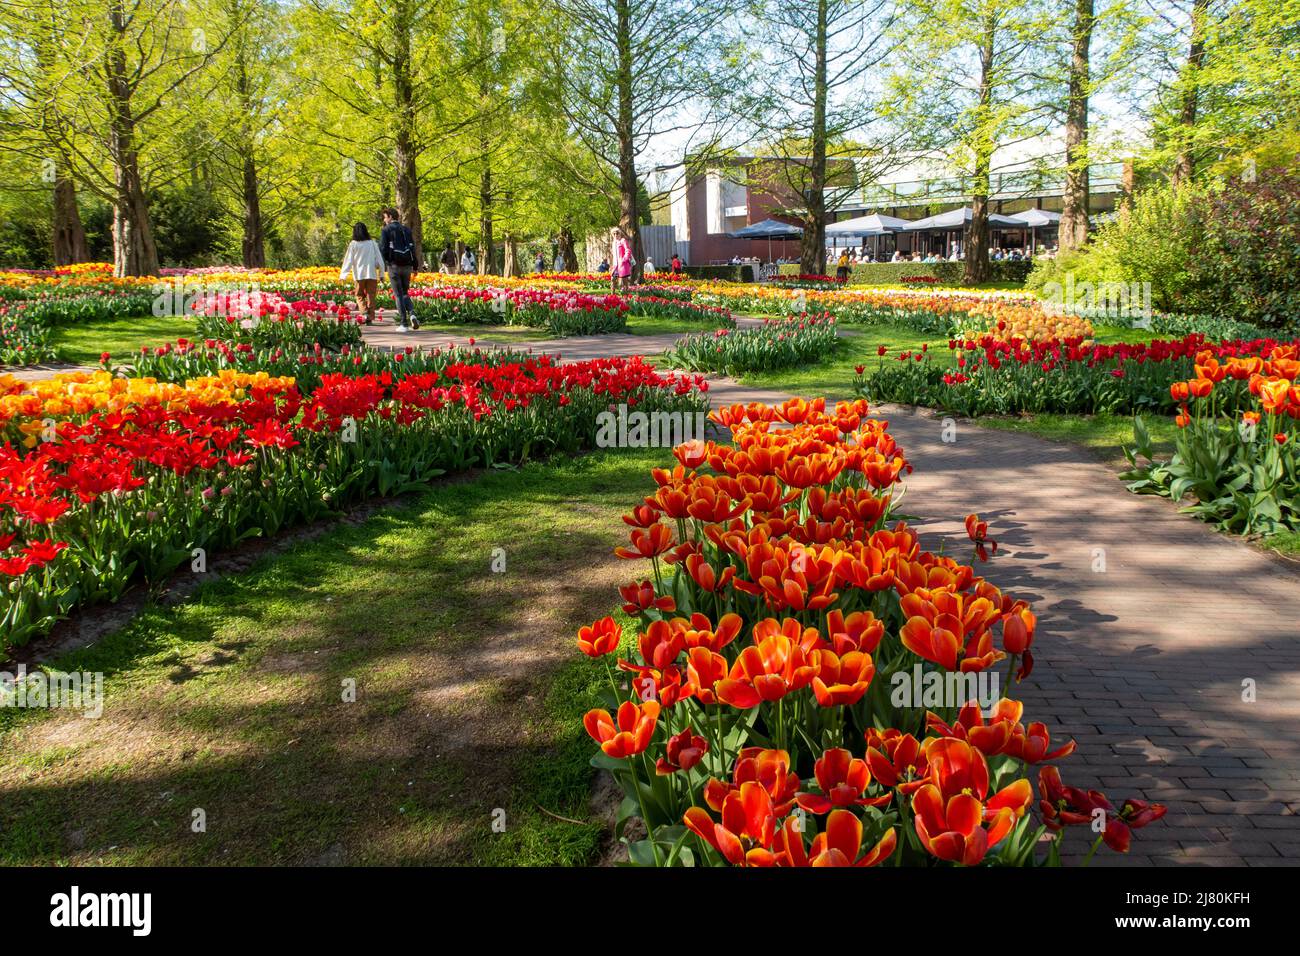 Il Parco Keukenhof, noto anche come il Giardino d'Europa, è uno dei giardini fioriti più grandi del mondo, situato nel comune di Lisse, nei Paesi Bassi Foto Stock